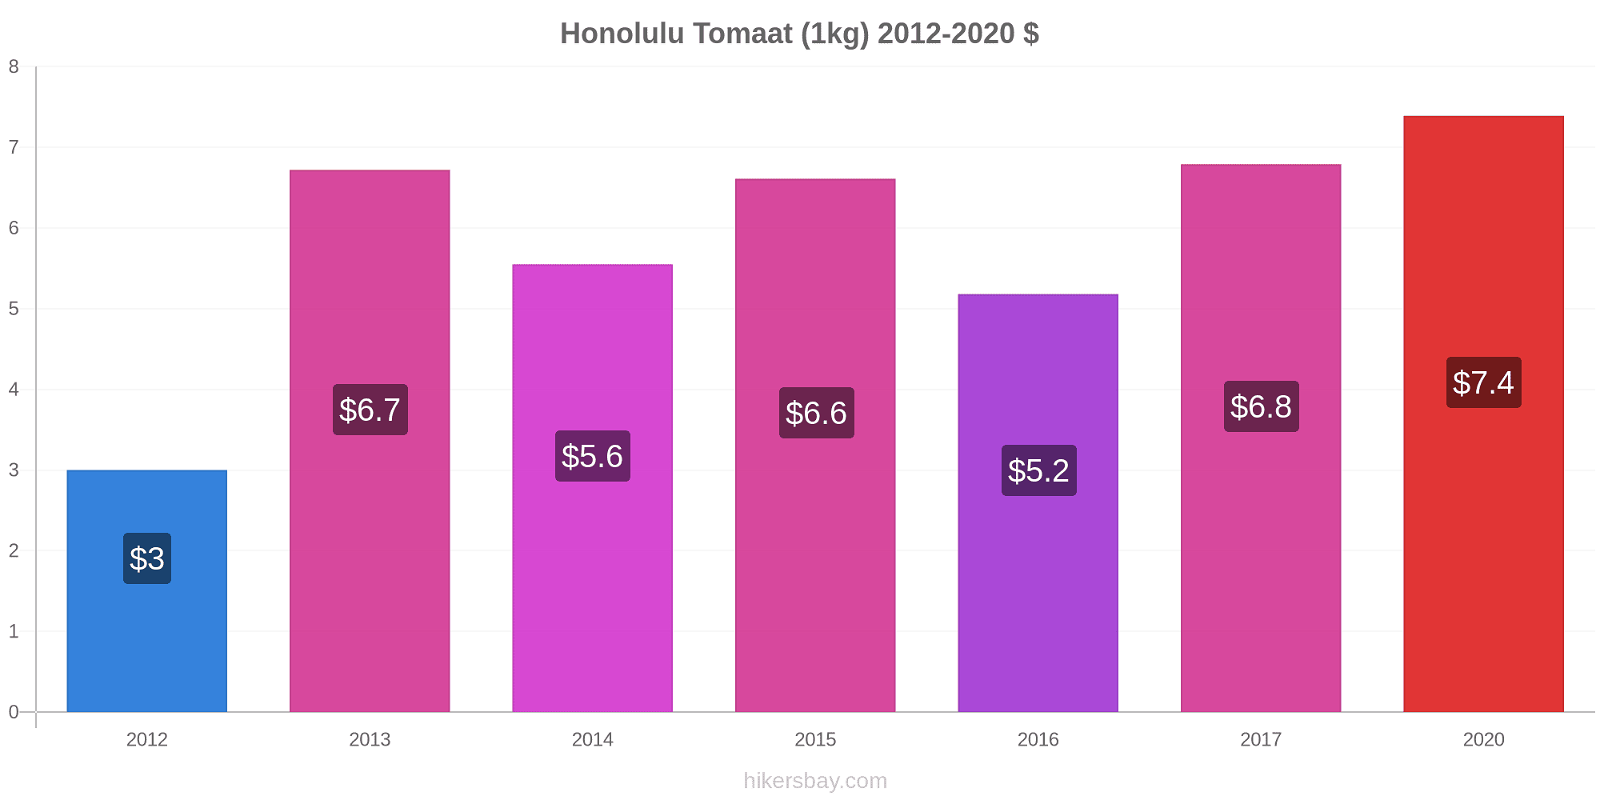 Honolulu prijswijzigingen Tomaat (1kg) hikersbay.com